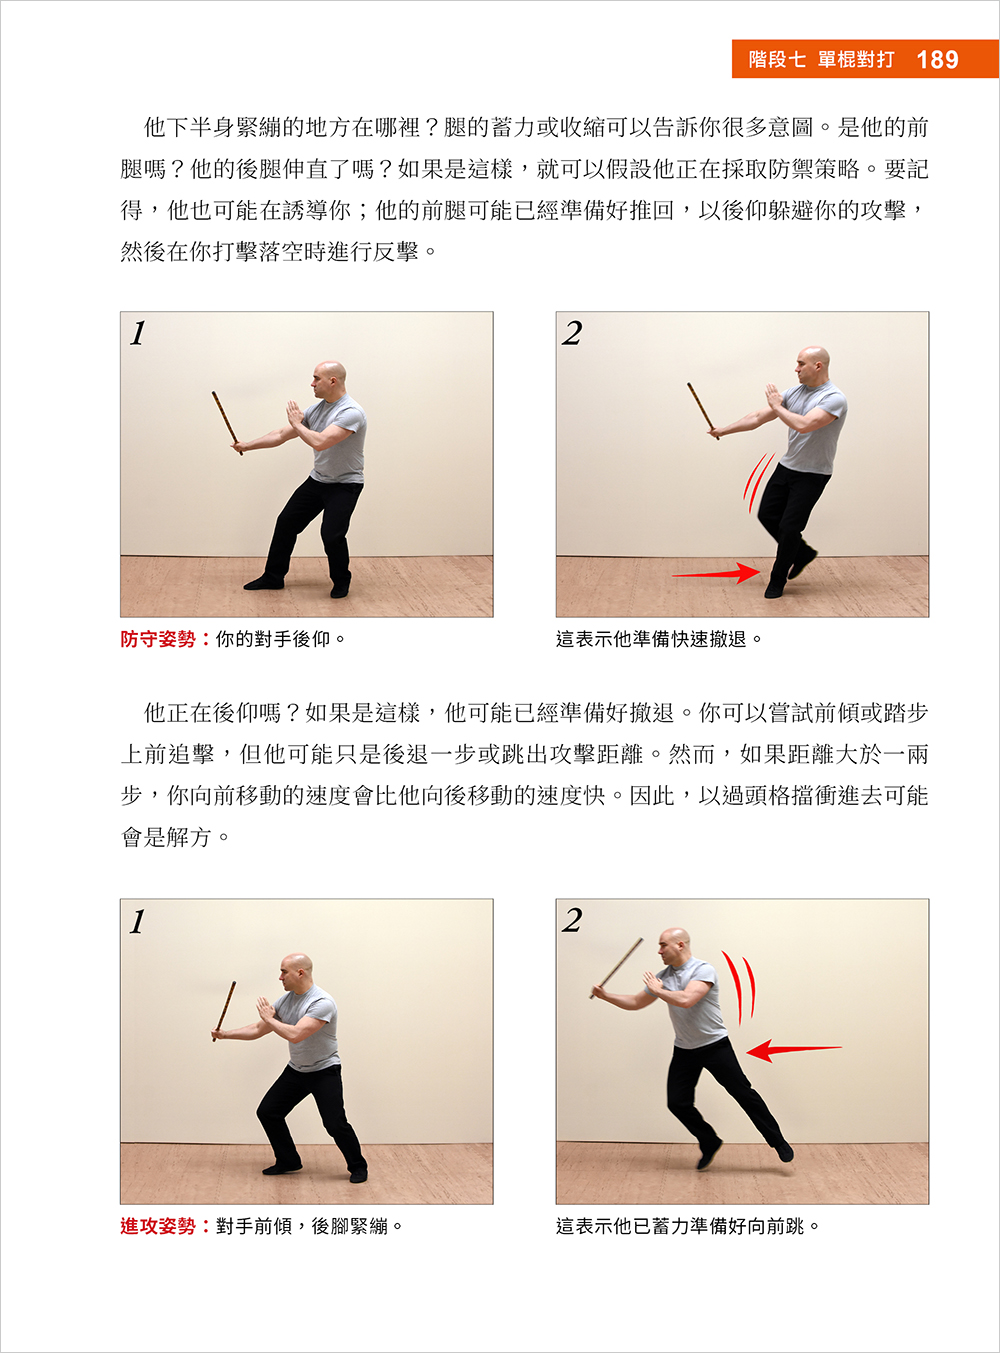 Stick Fighting 短棍格鬥教本：菲律賓魔杖與各路棍術精華，九階段防身與對戰訓練課程（全彩印刷）